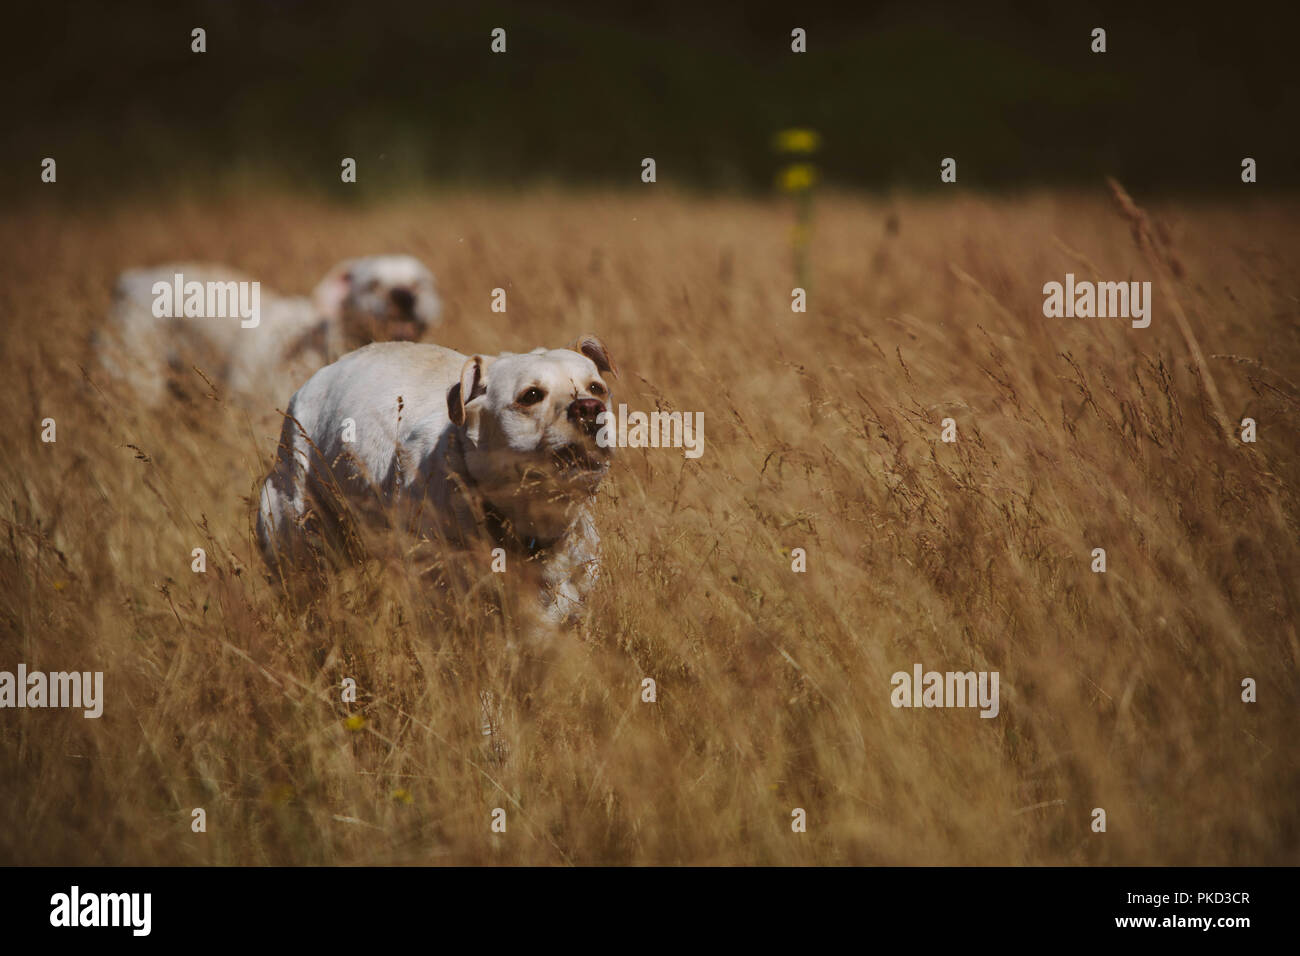 Deux chiens Labrador golden opérationnel rapidement grâce à l'herbe jaune dans un champ. Banque D'Images